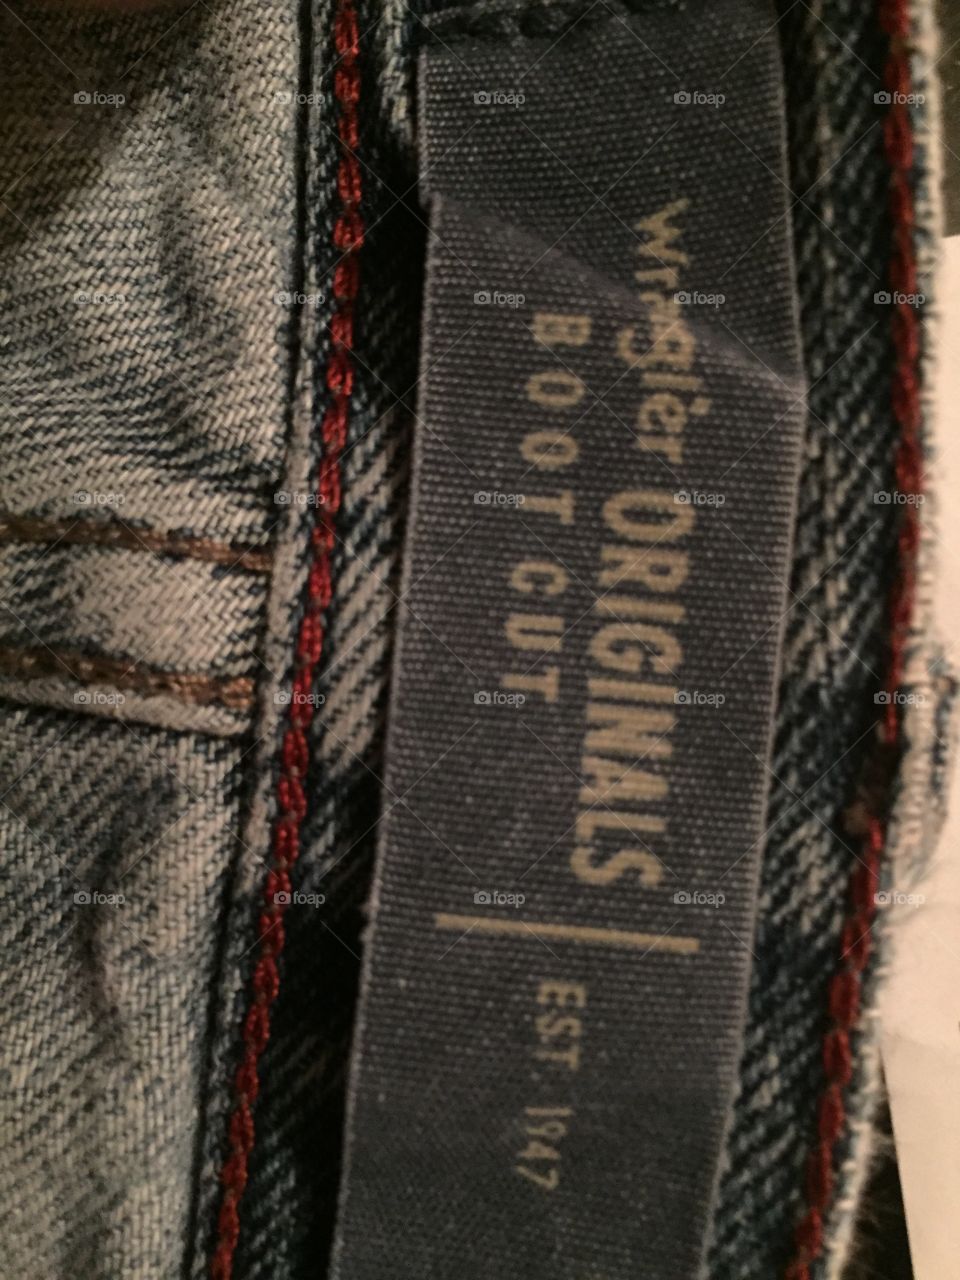 Wrangler jeans tag: originals boot cut